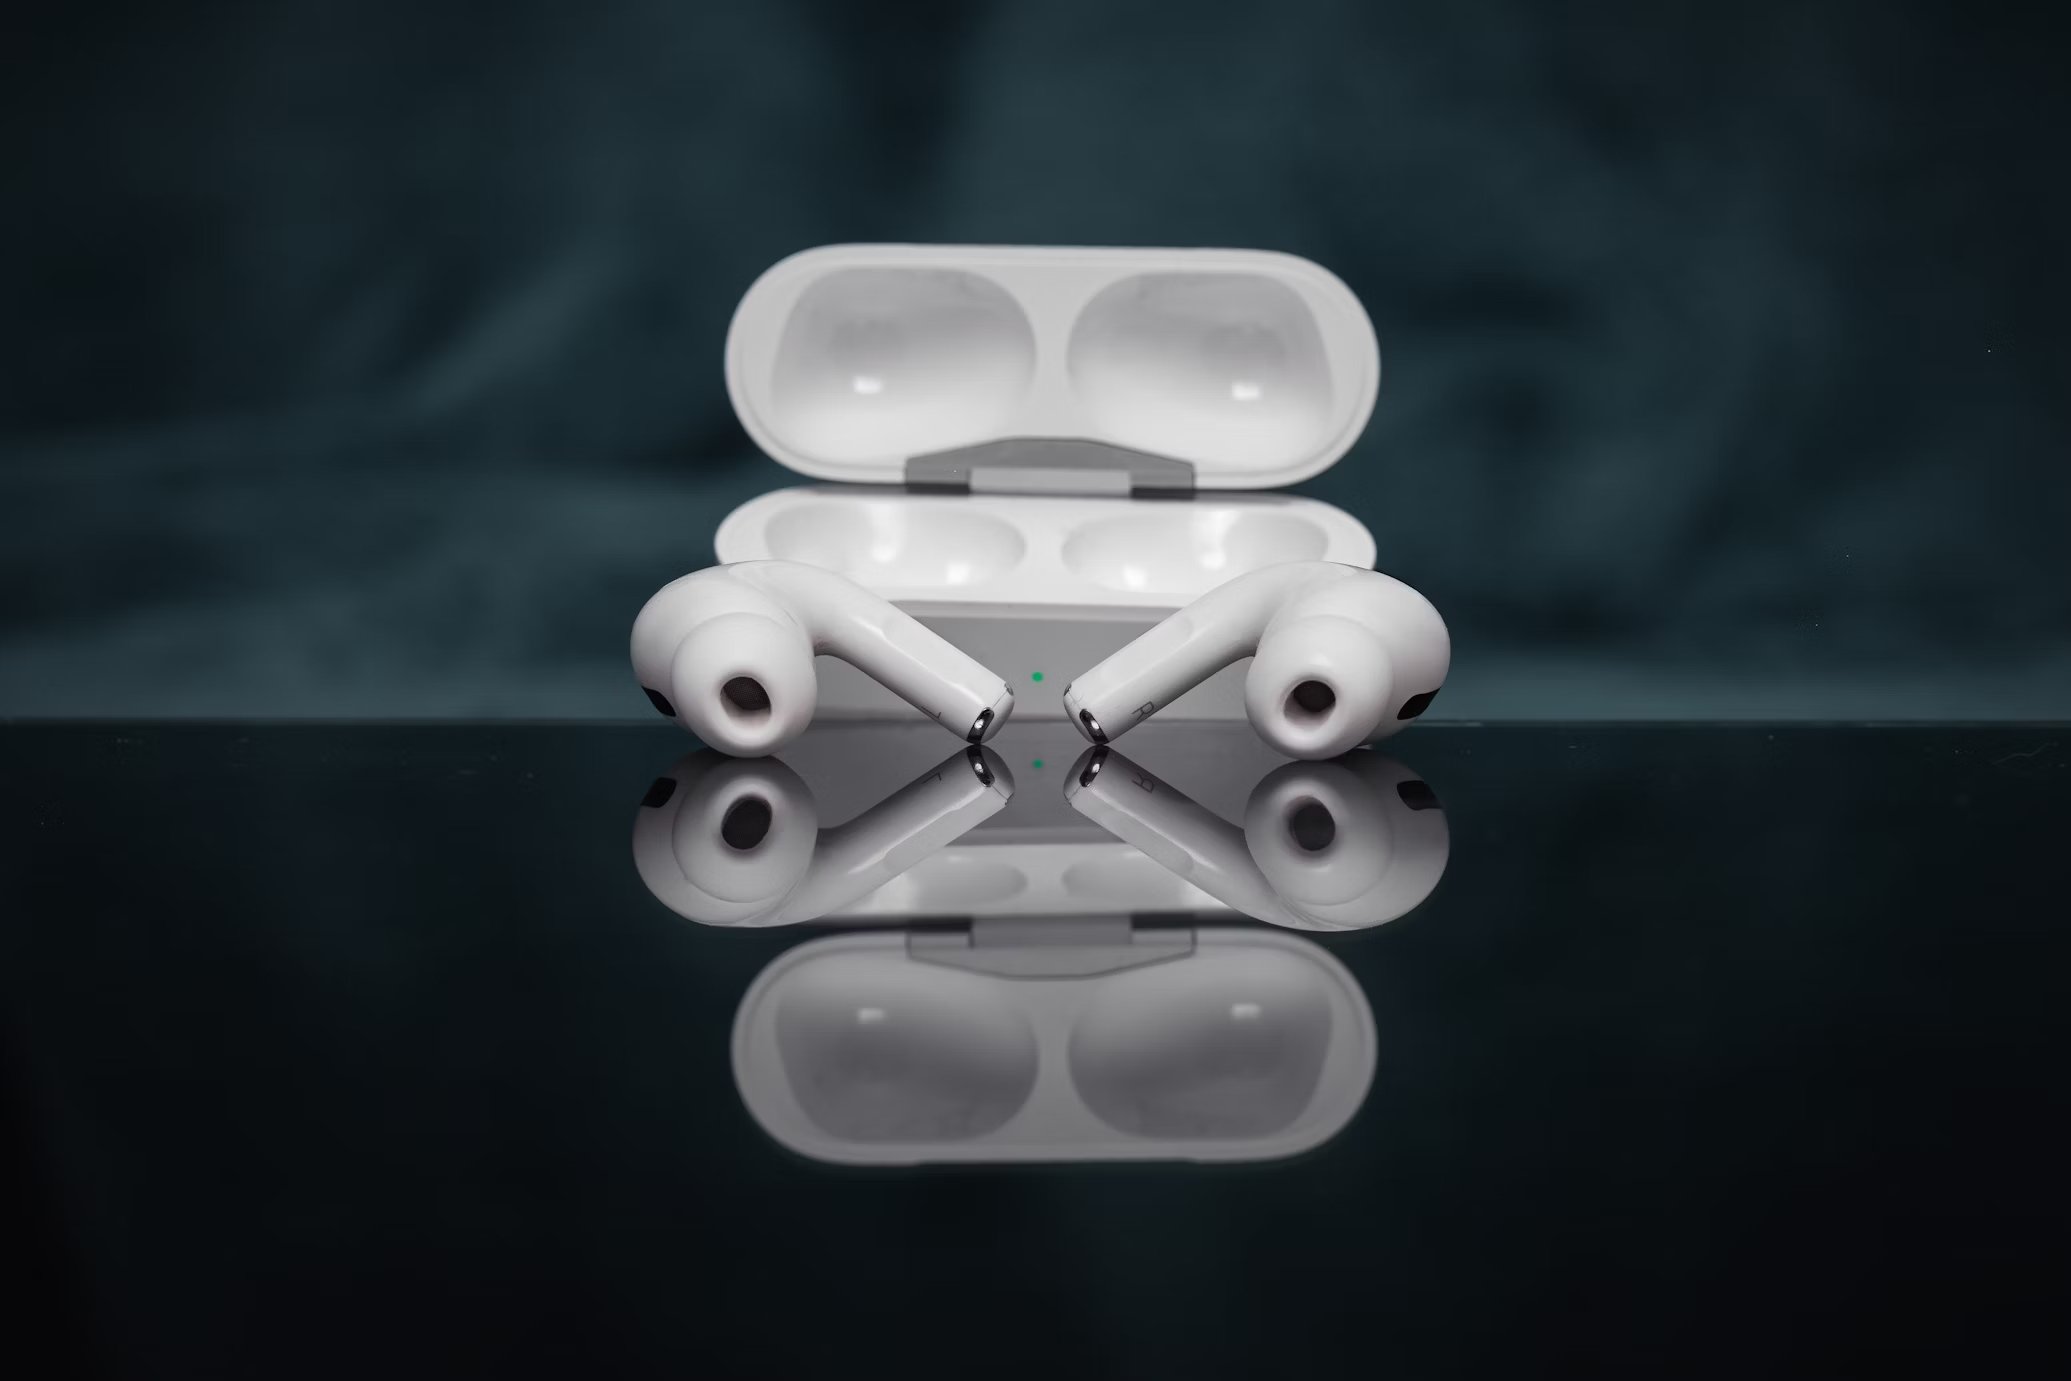 Apple AirPods Pro de segunda geração estão a um preço especial na Amazon